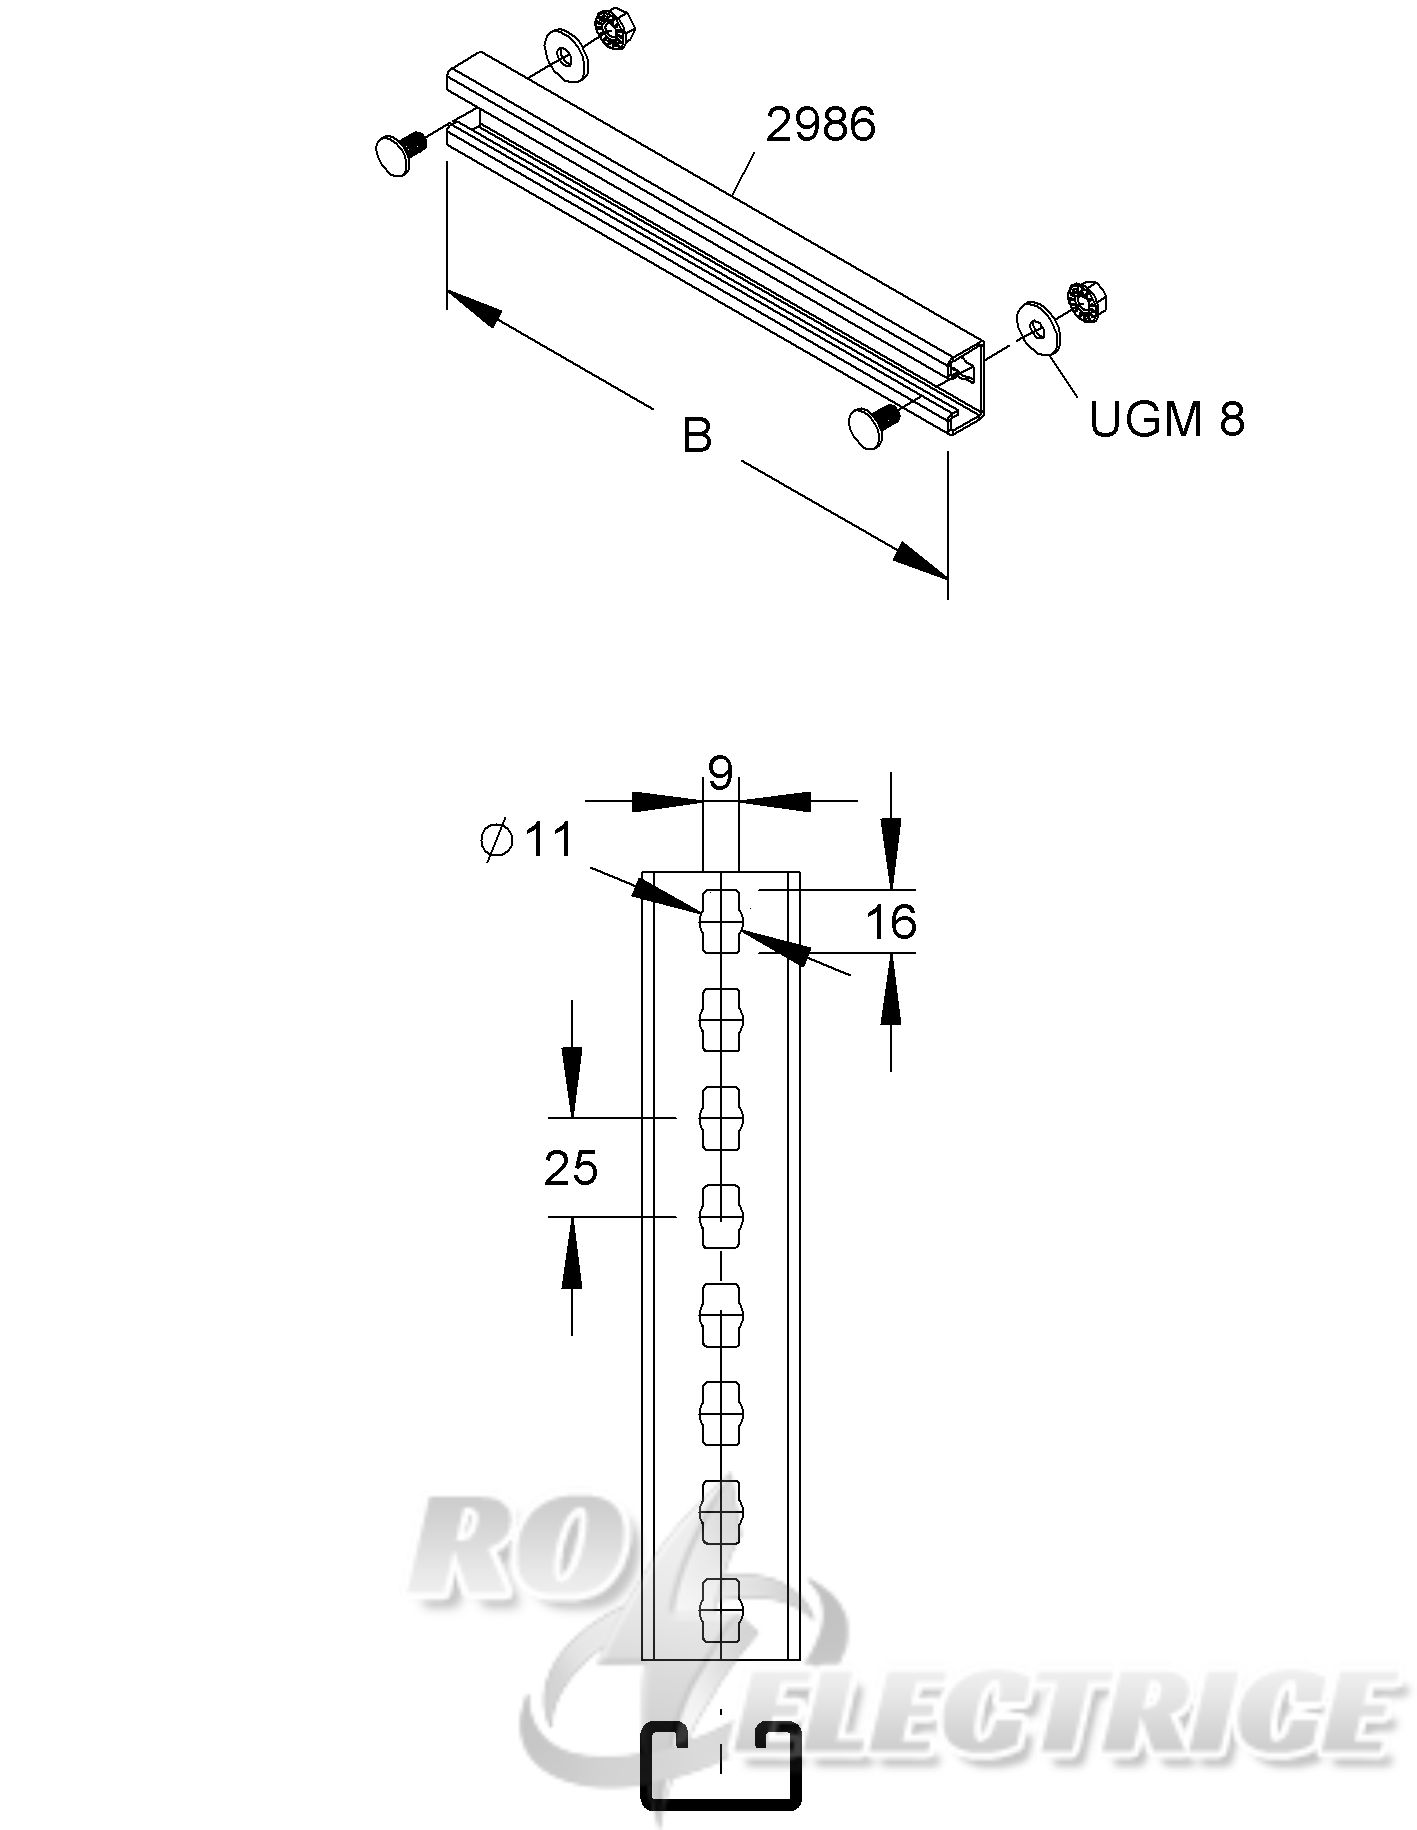 Sprosse für Steigetrassen, 40x22x2 mm, B=1000 mm, 1 kN, Stahl, feuerverzinkt DIN EN ISO 1461, inkl. Zubehör